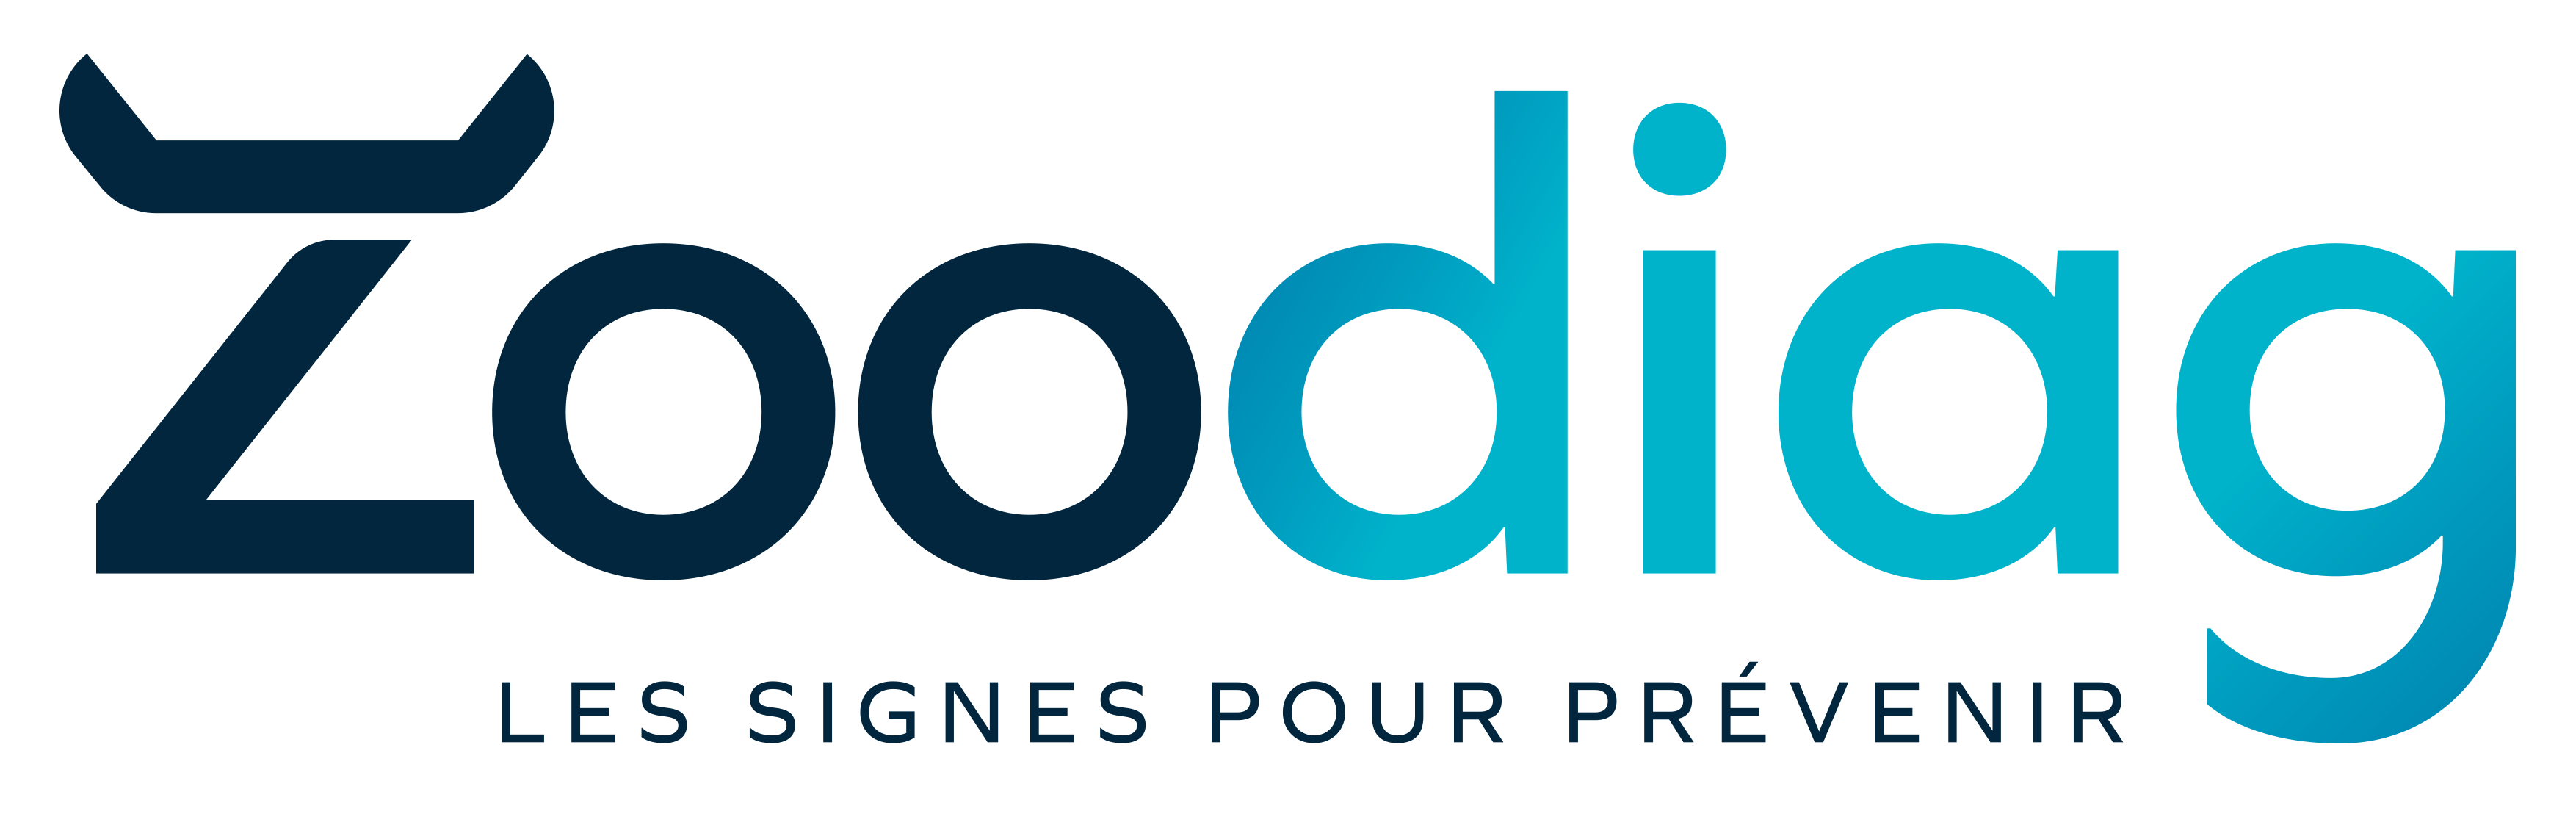 logo-Zoodiag